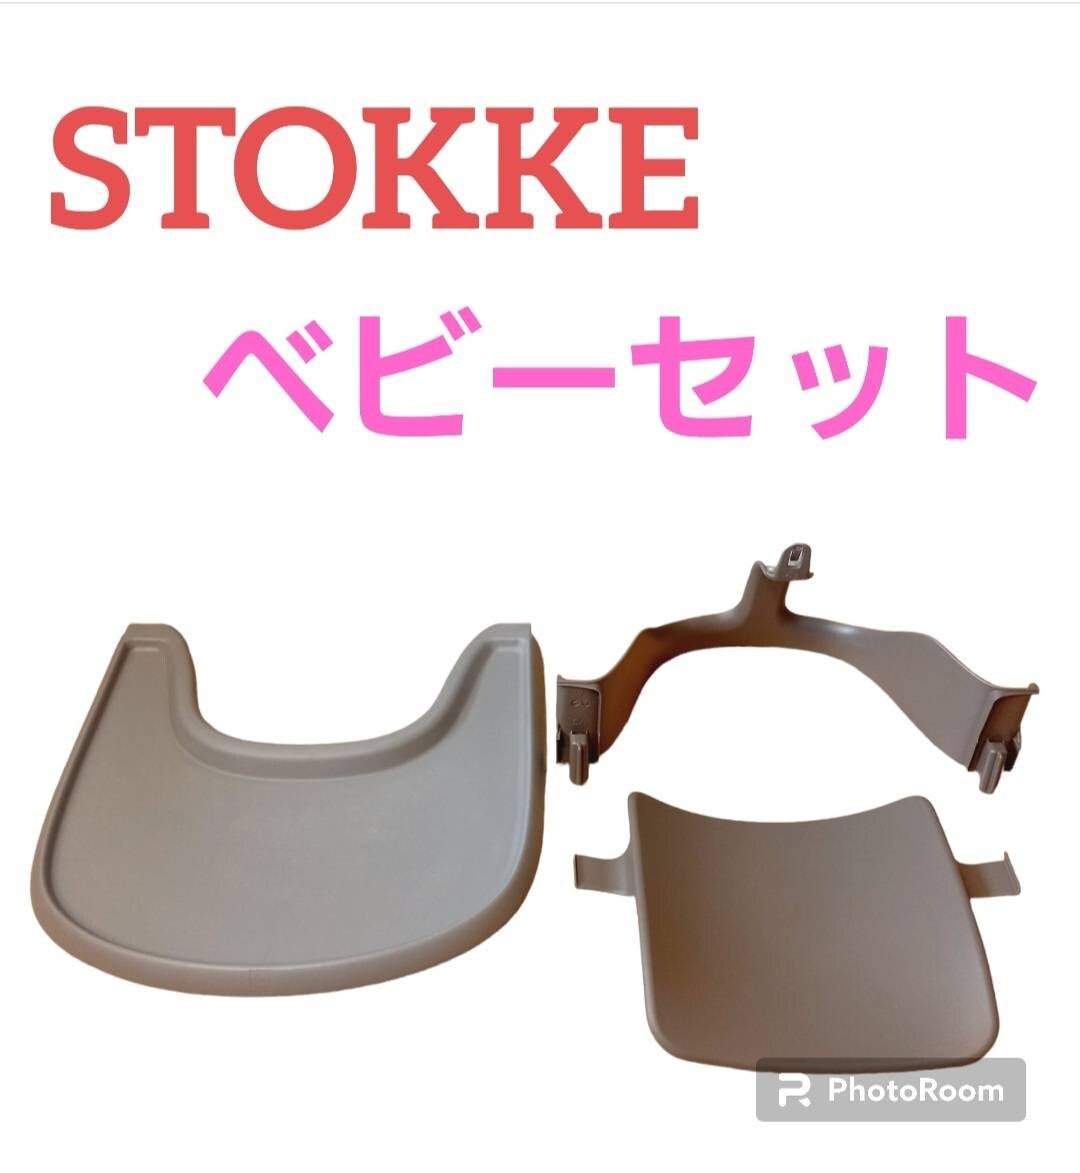 STOKKE -тактный ke поездка ловушка детский стул tray baby комплект 